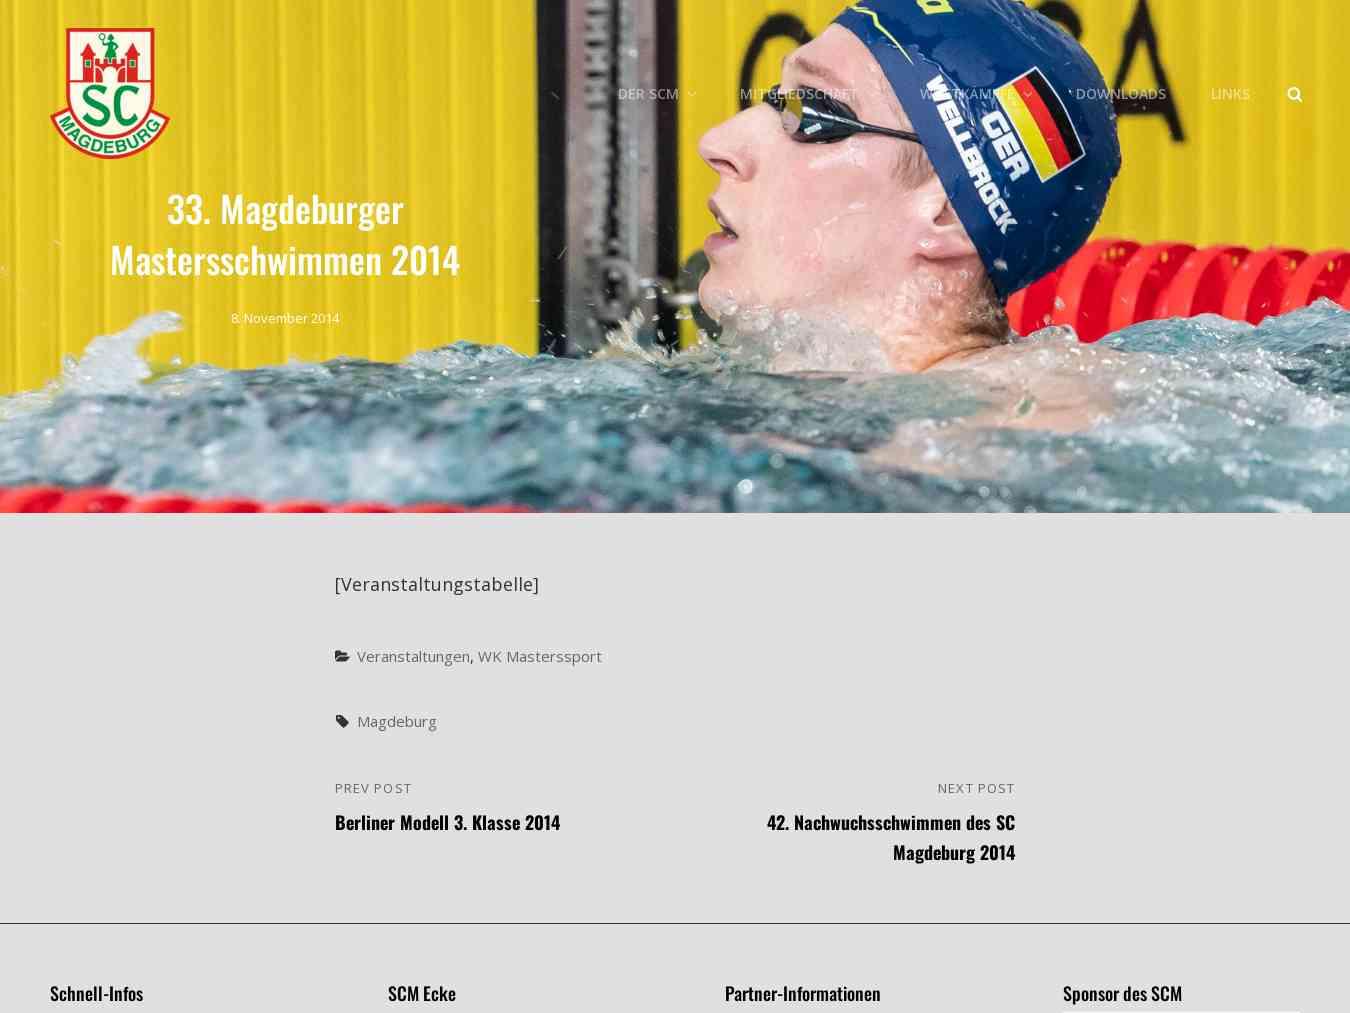 Veranstalterhomepage - http://scm-schwimmen.de/2014/11/33-magdeburger-mastersschwimmen-2014/